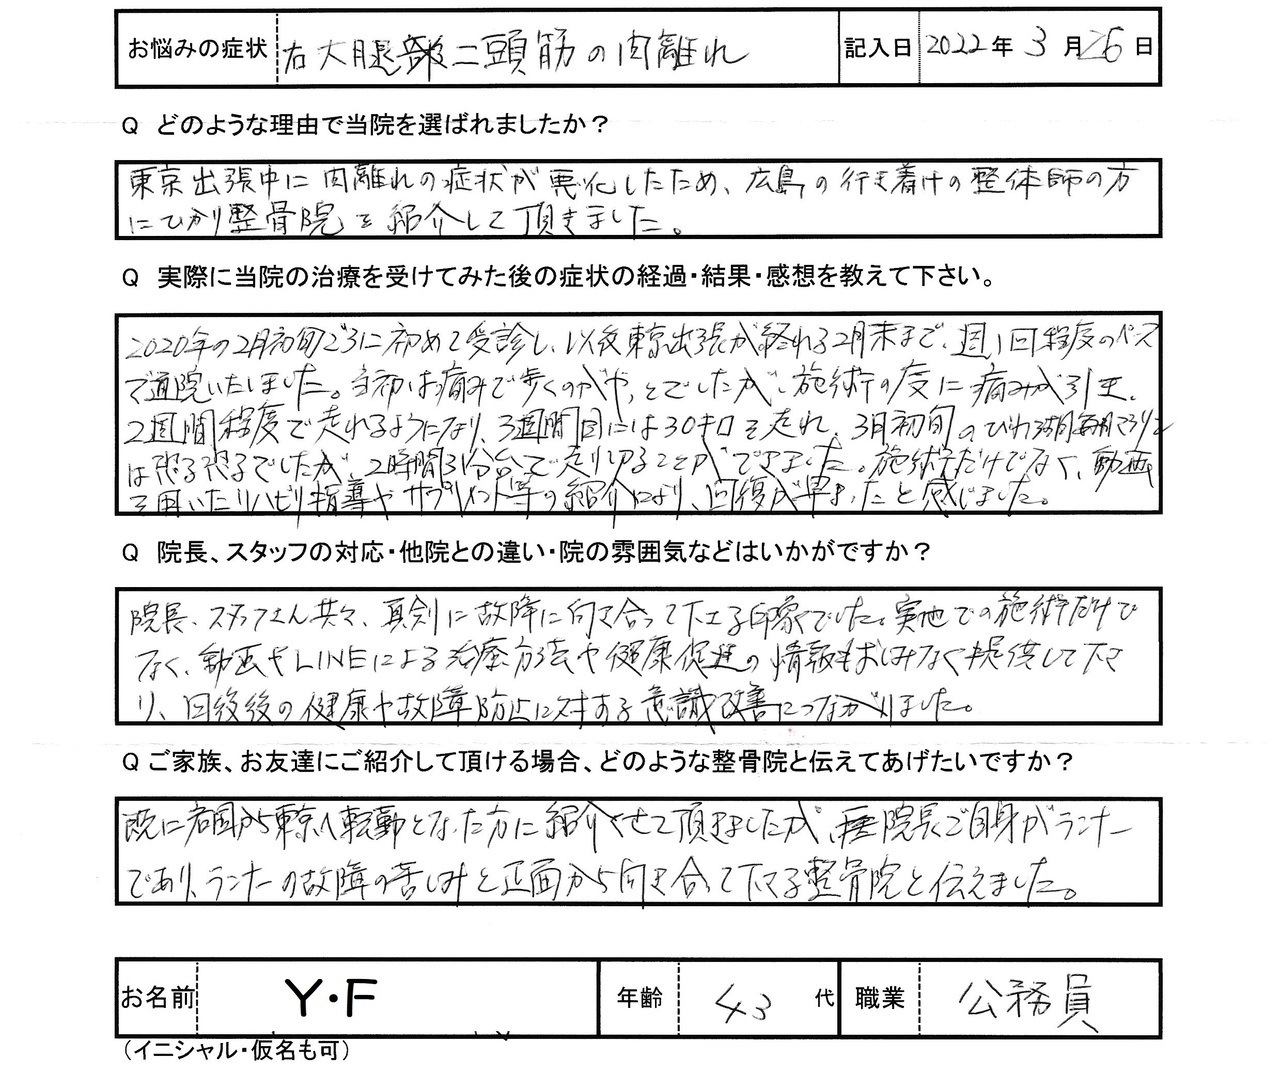 Y・Fさんアンケート用紙